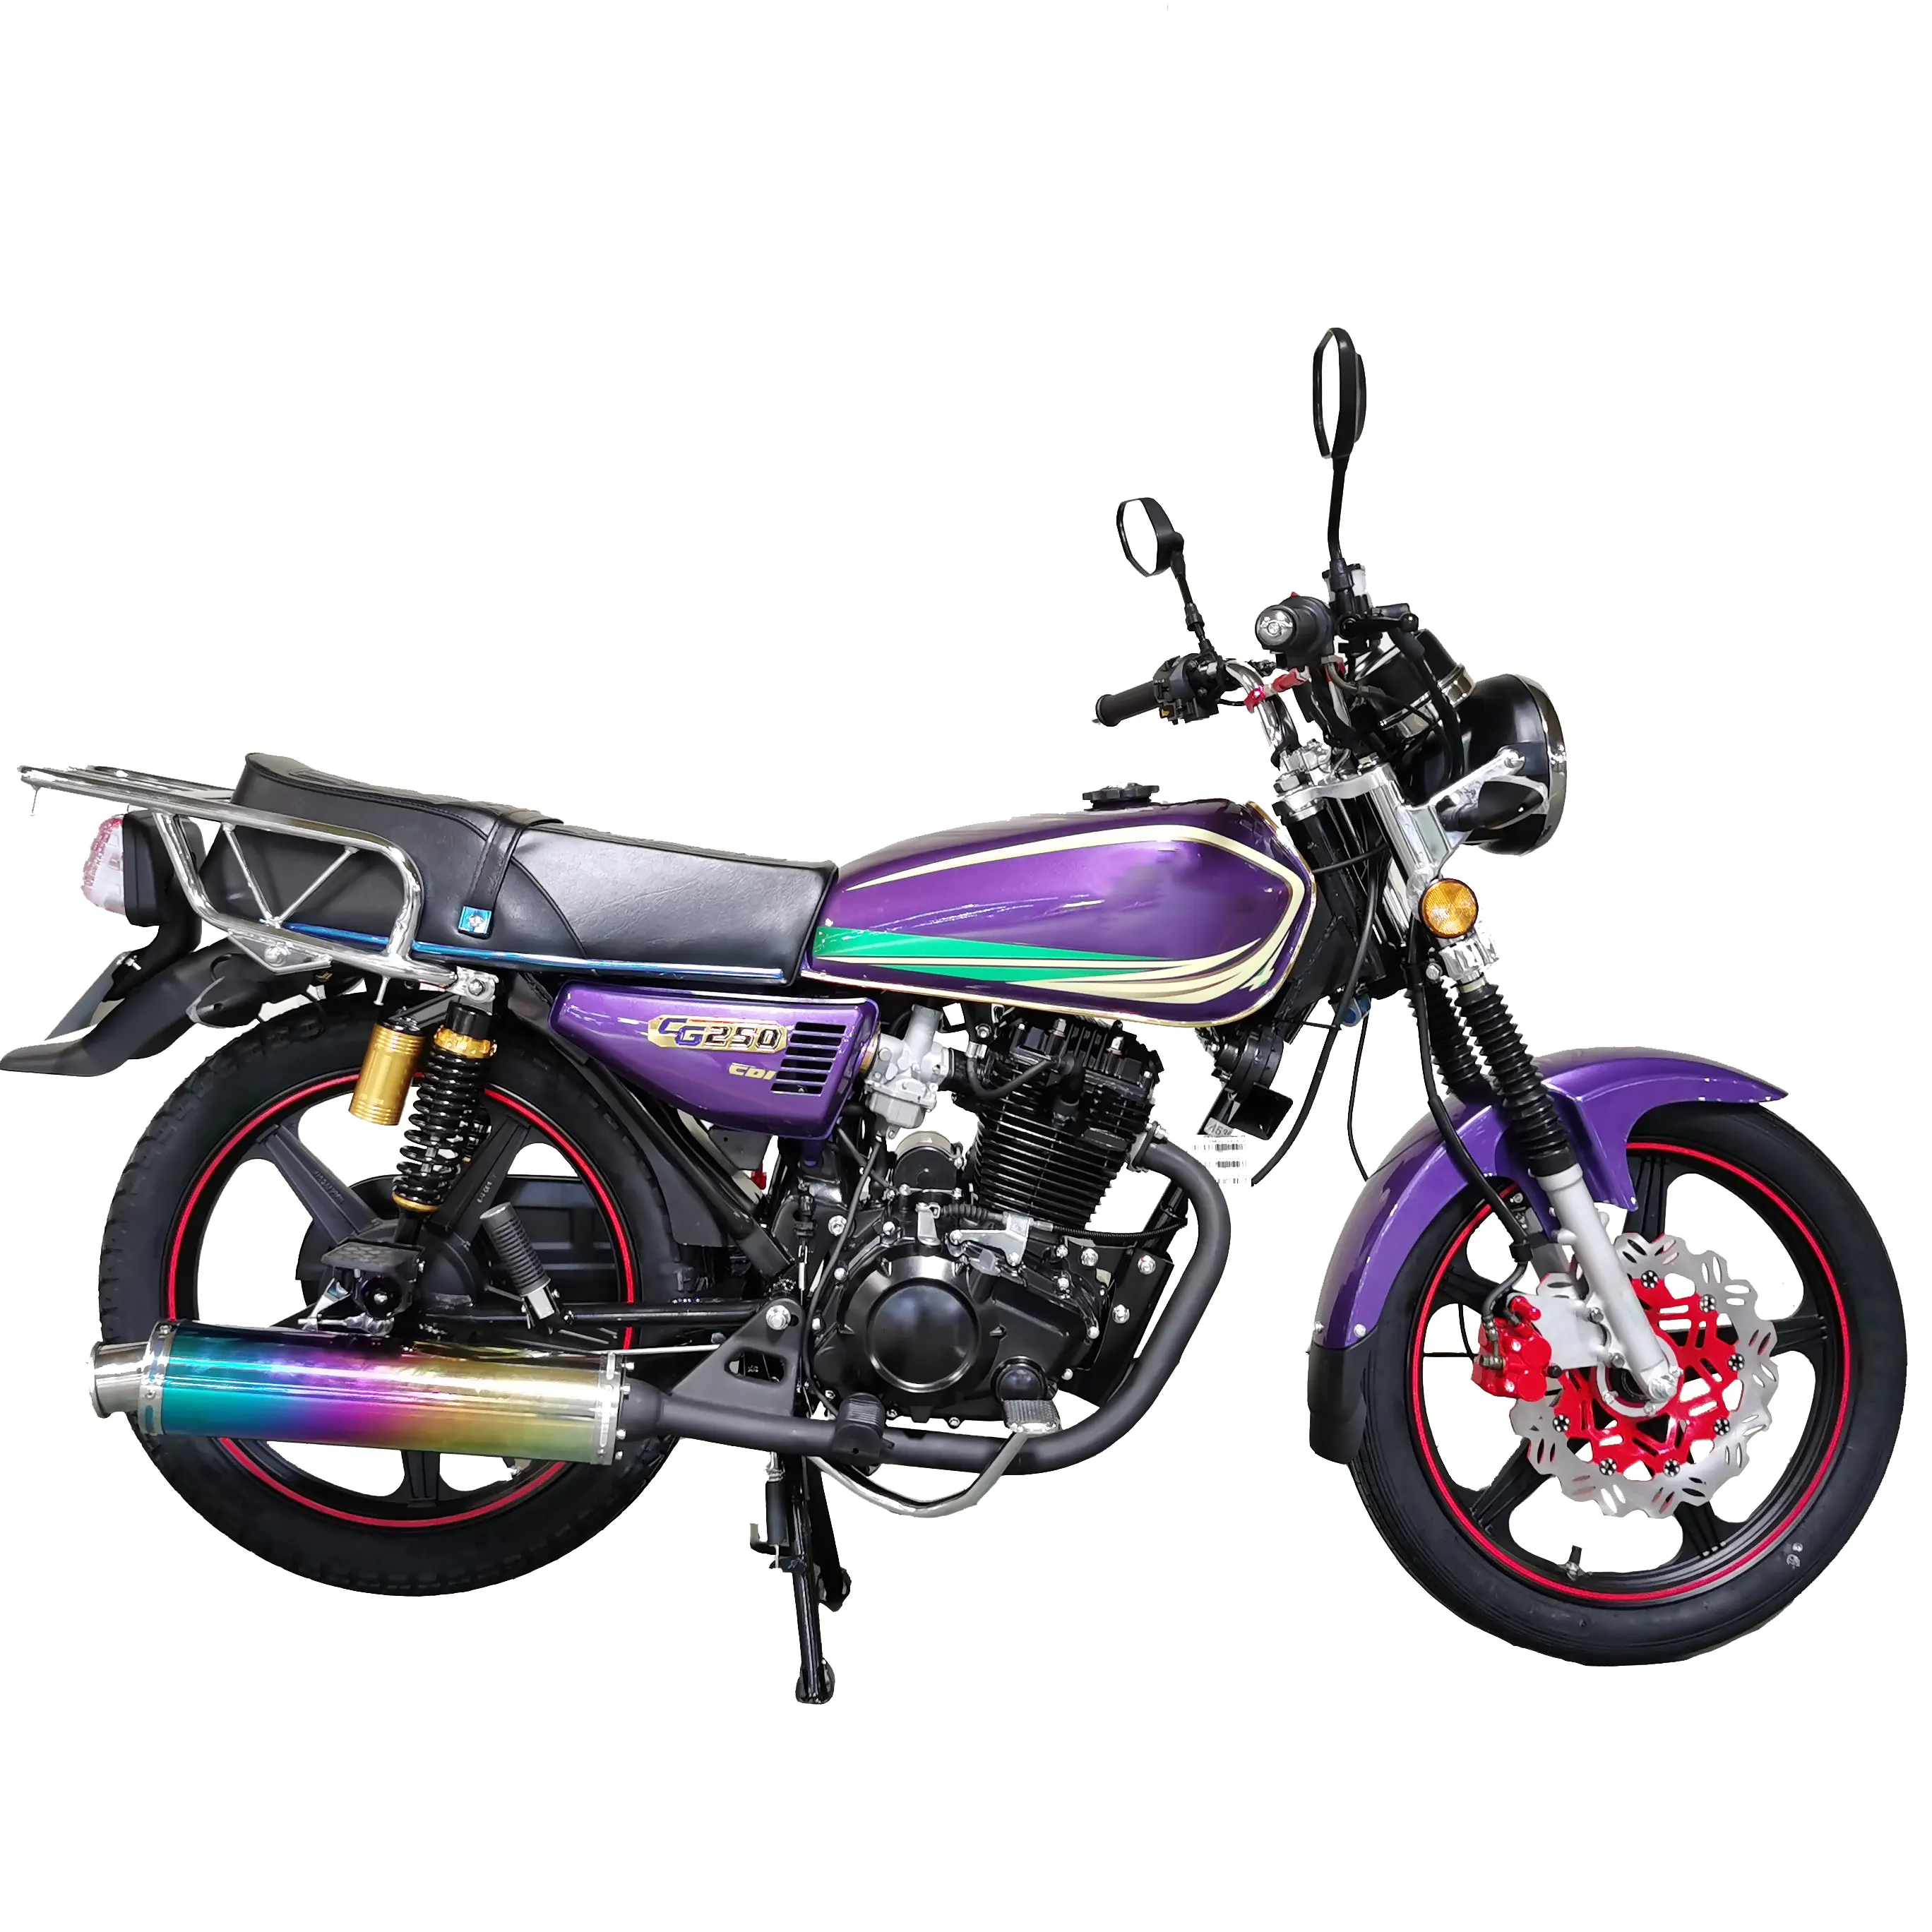 Motocicleta de gasolina para adulto, moto de calle grande de 4 tiempos, 250cc CG FH250, color púrpura personalizado